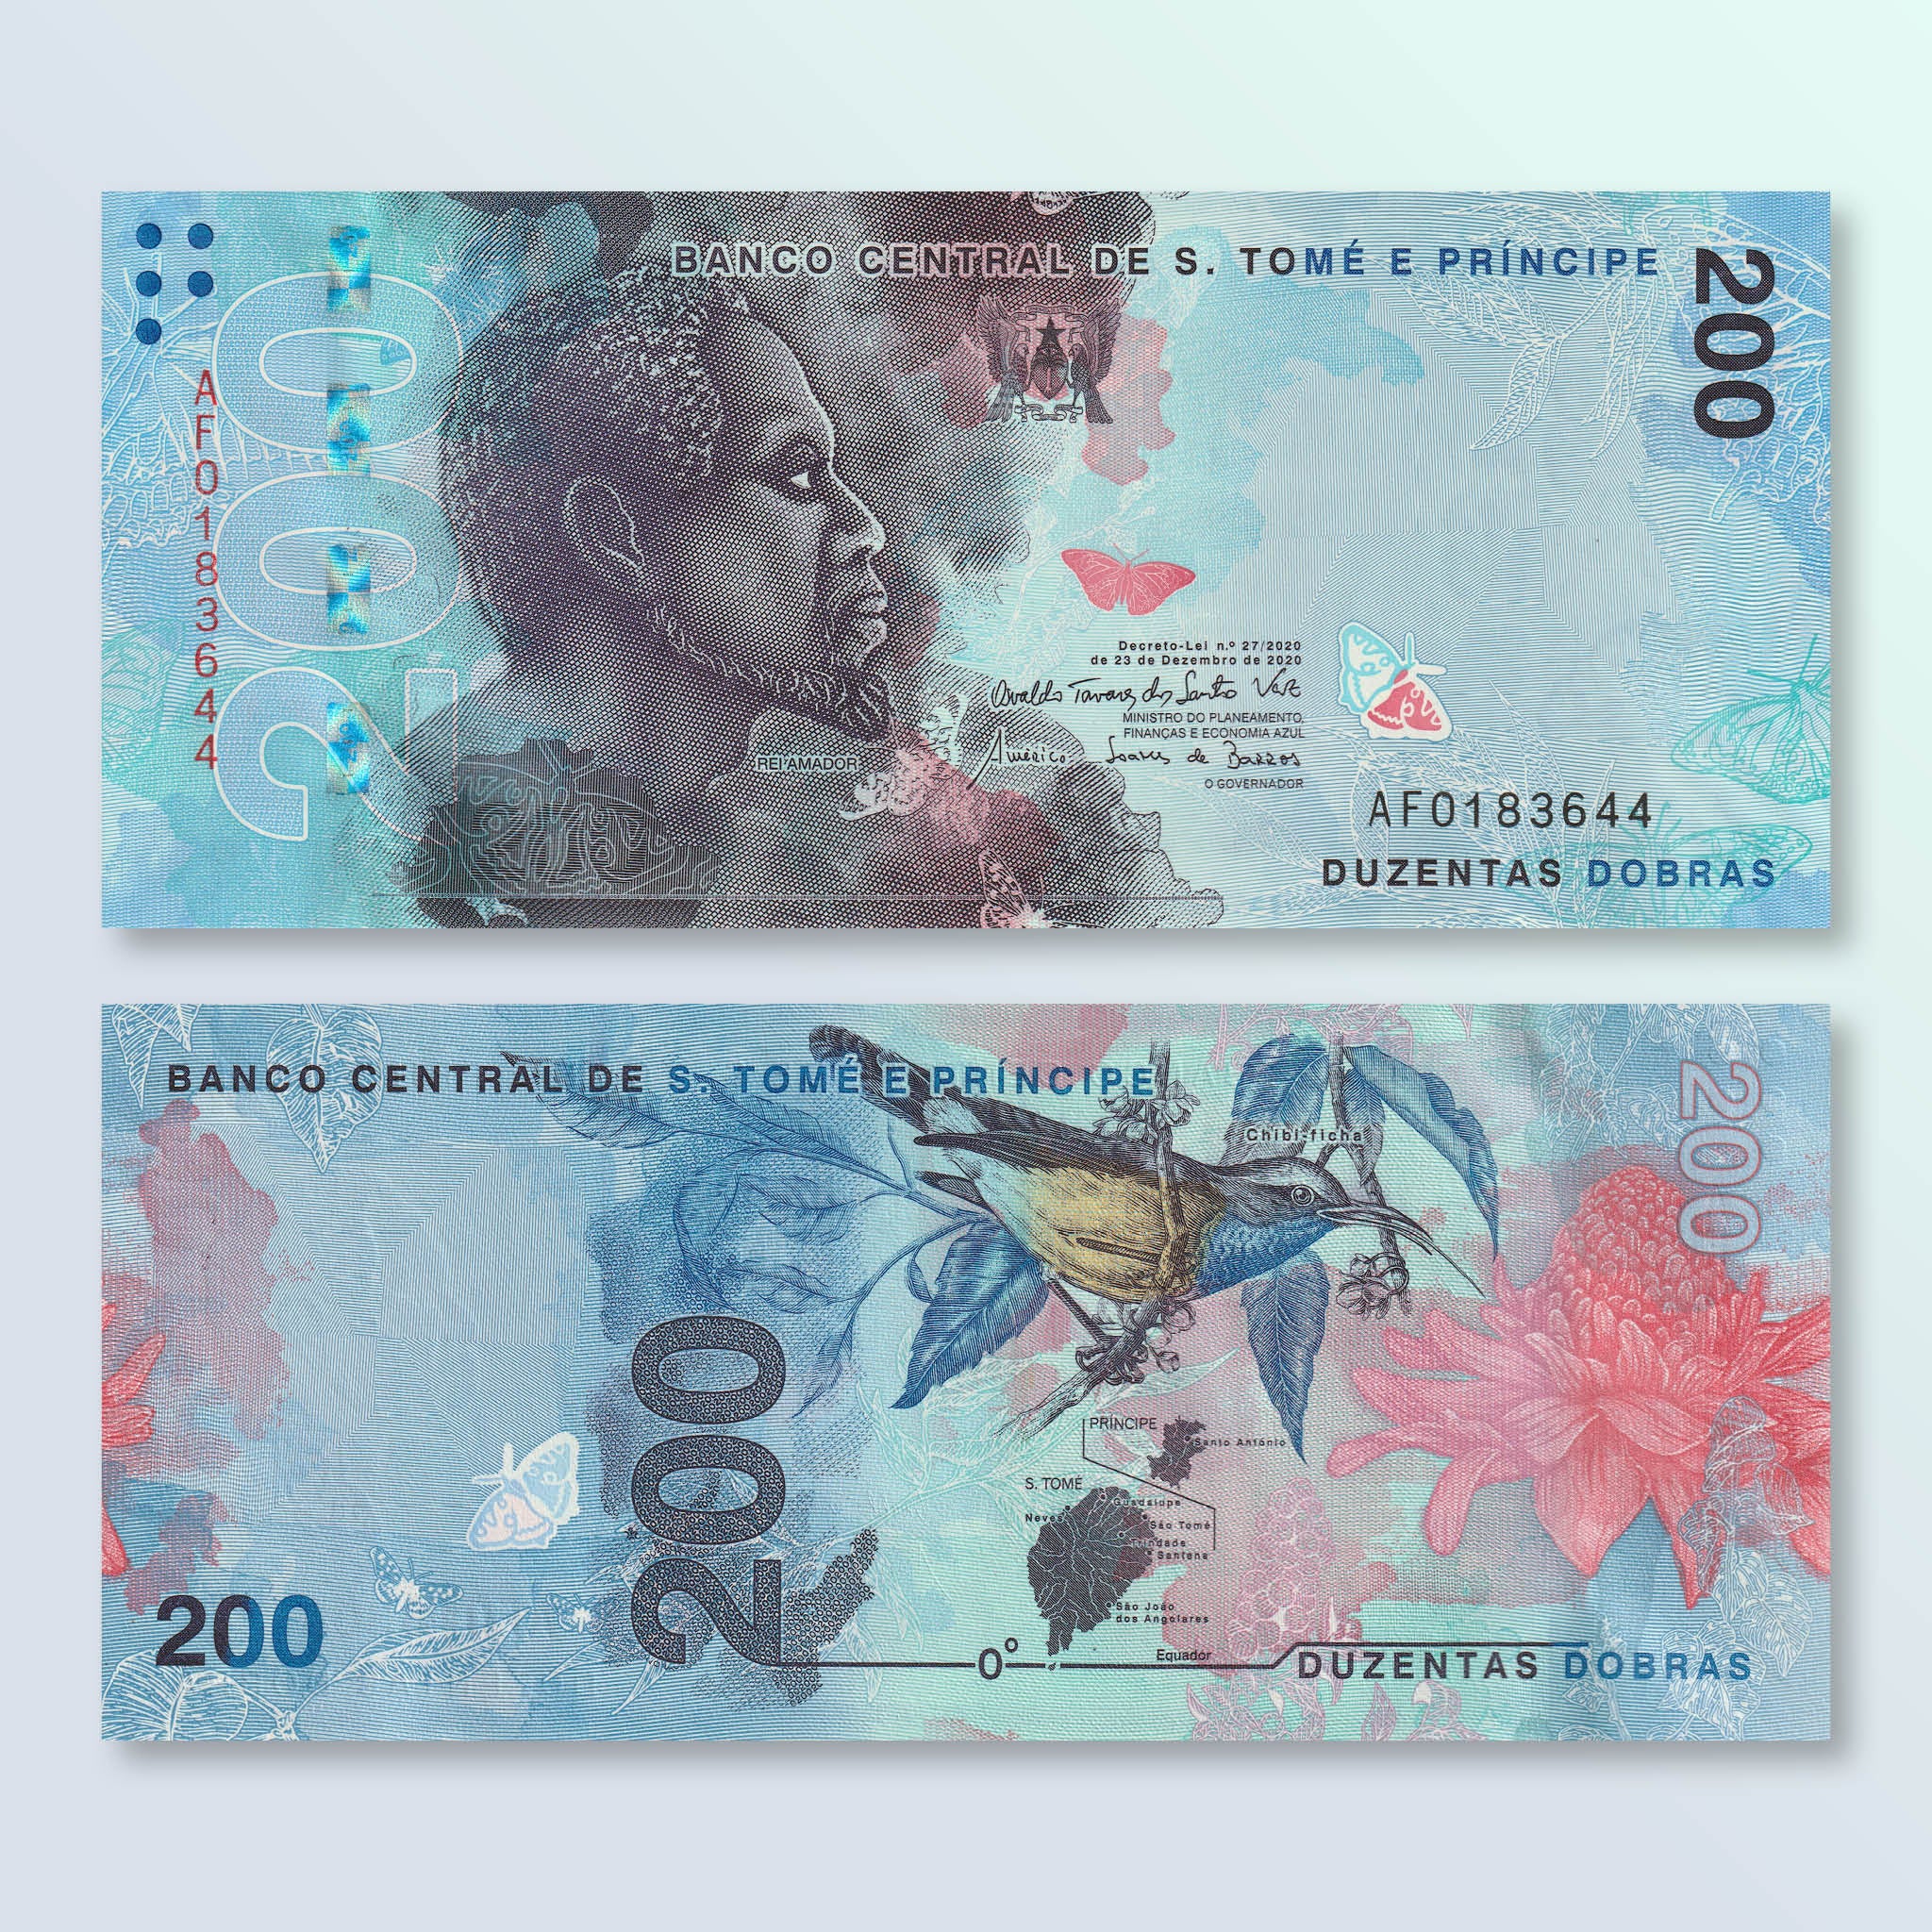 São Tomé & Príncipe 200 Dobras, 2020, B316a, UNC - Robert's World Money - World Banknotes